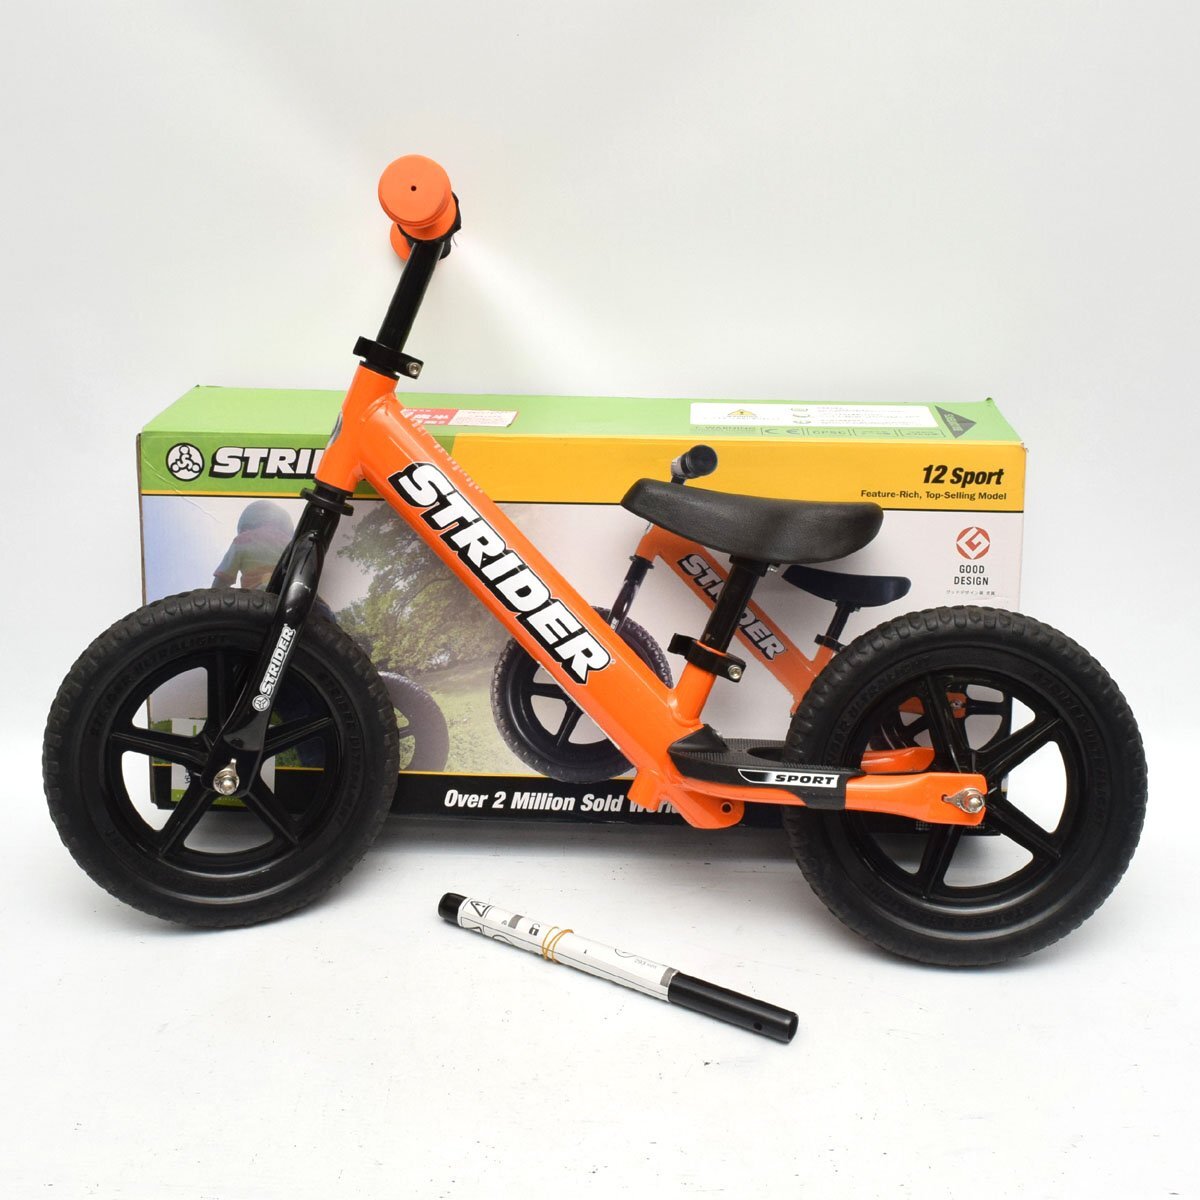 STRIDER 12 Sport ストライダー 12インチ スポーツモデル オレンジ ペダルなし自転車 [S207719]の画像1